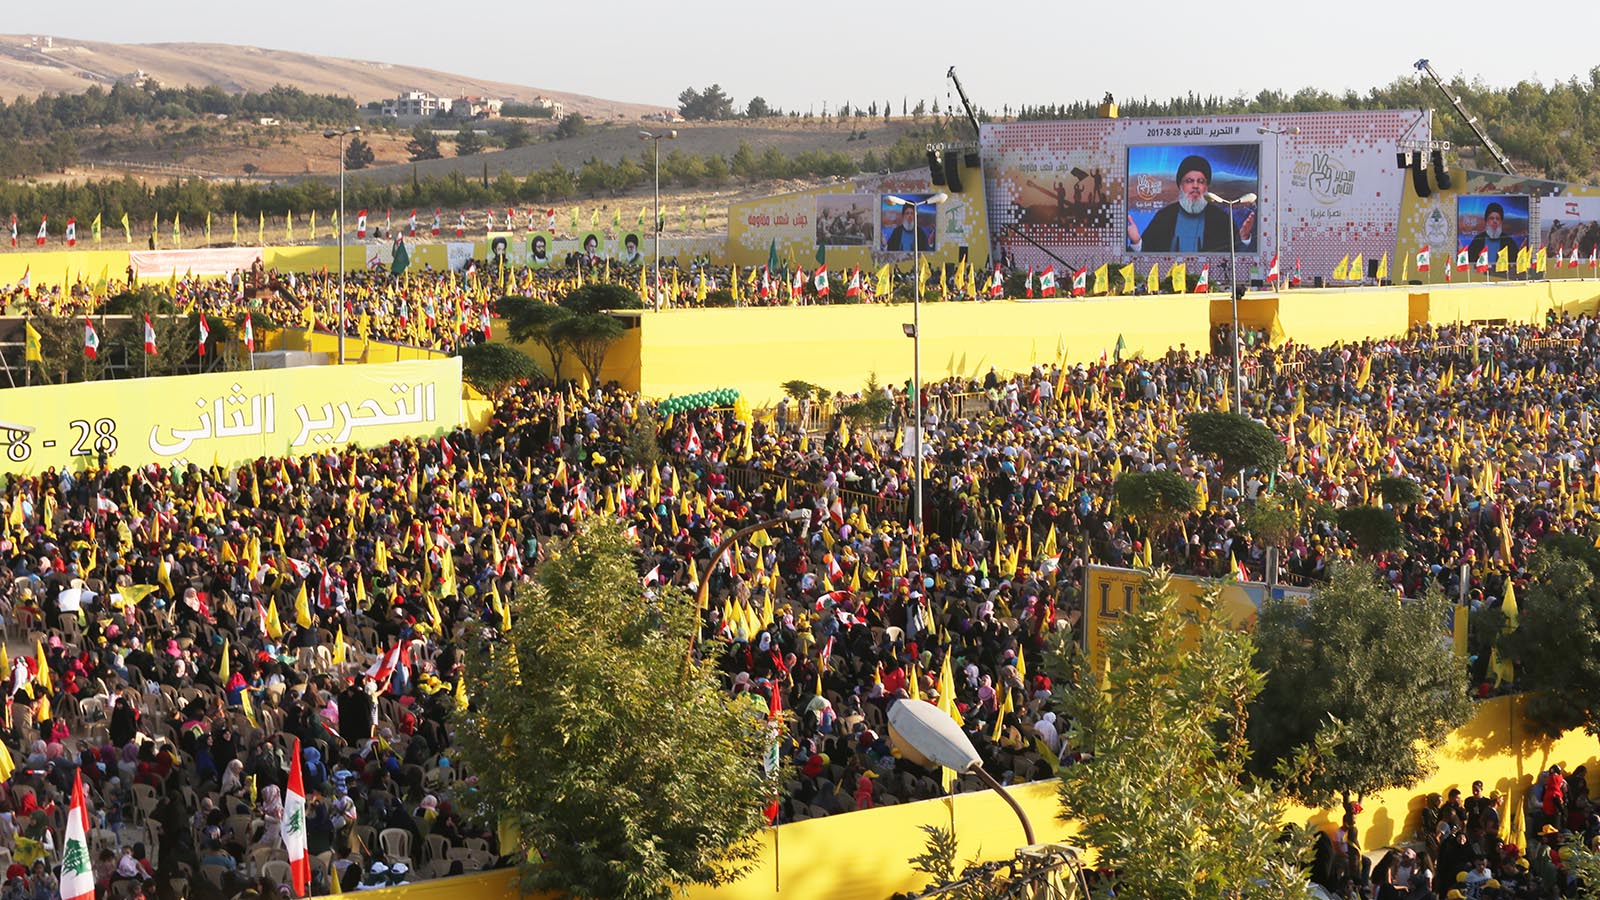 سياسيون يقرأون فنجان العقوبات: شيطنة حزب الله